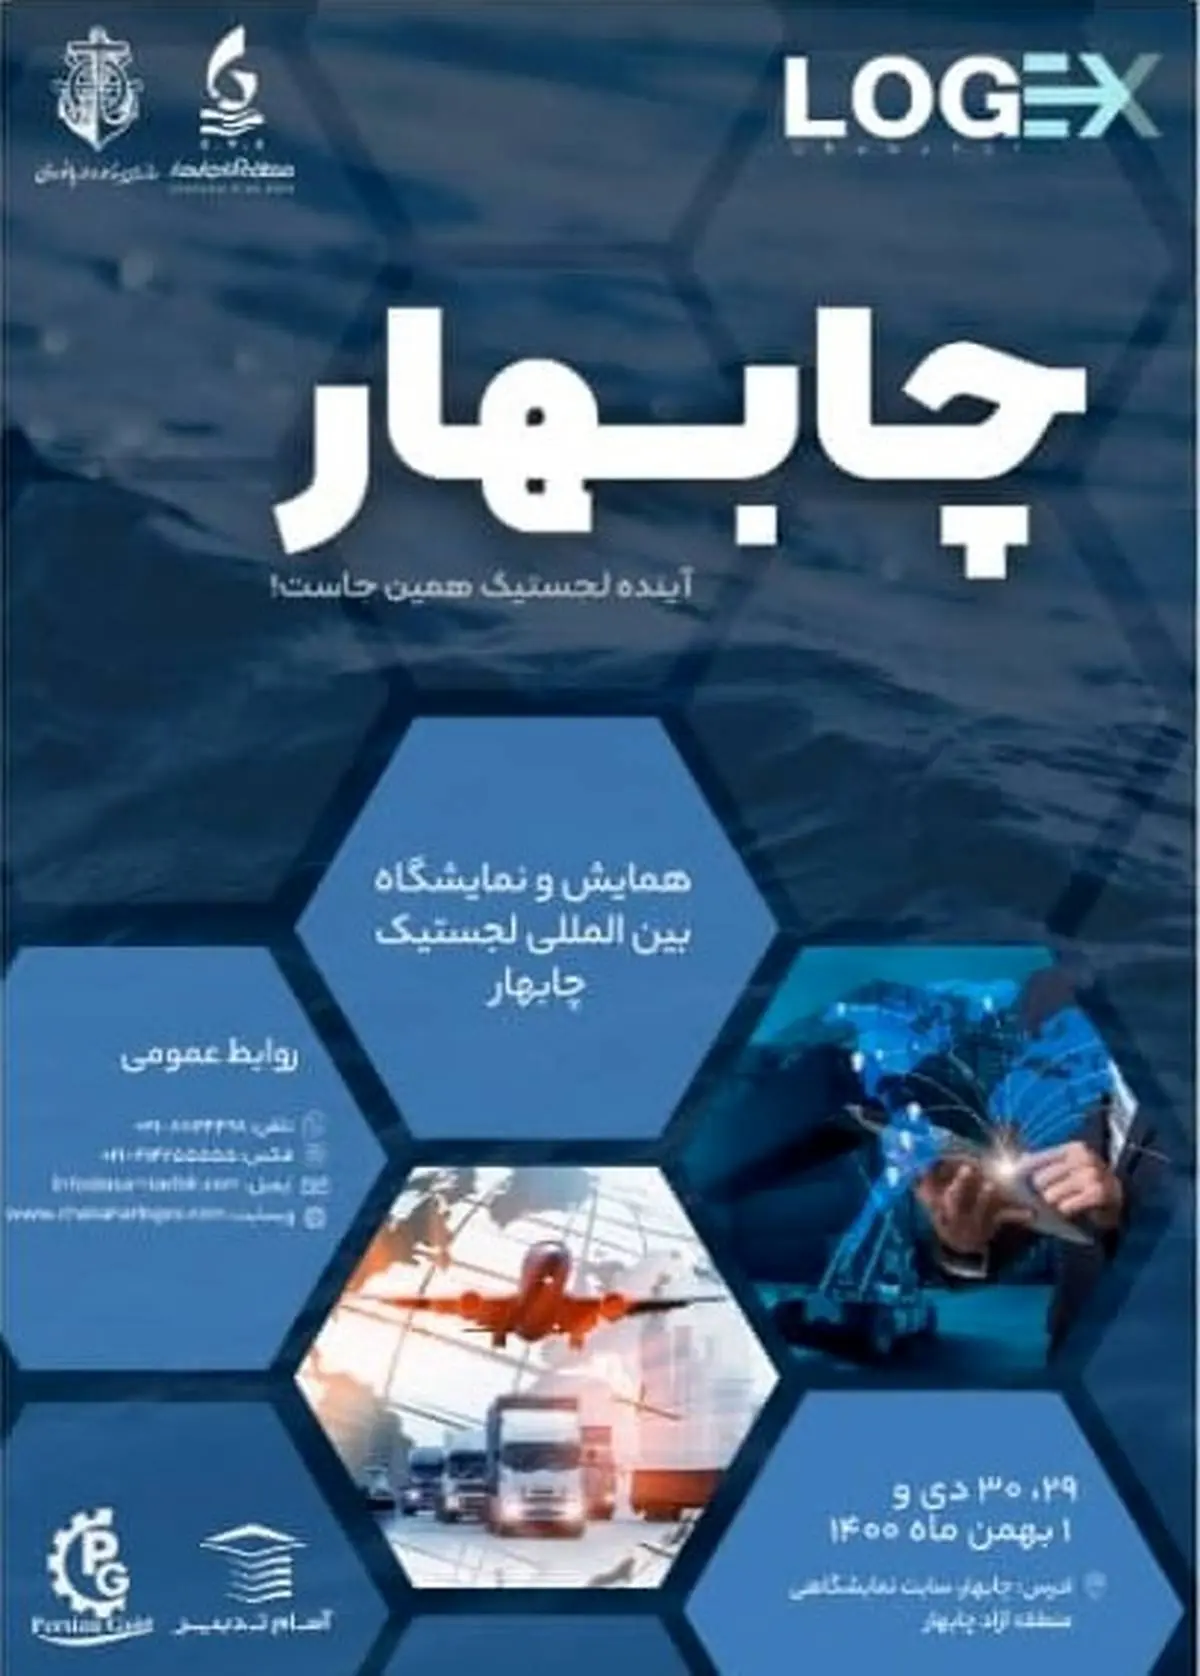 چابهار، پایتخت دریایی ایران میزبان همایش بین المللی لجستیک
